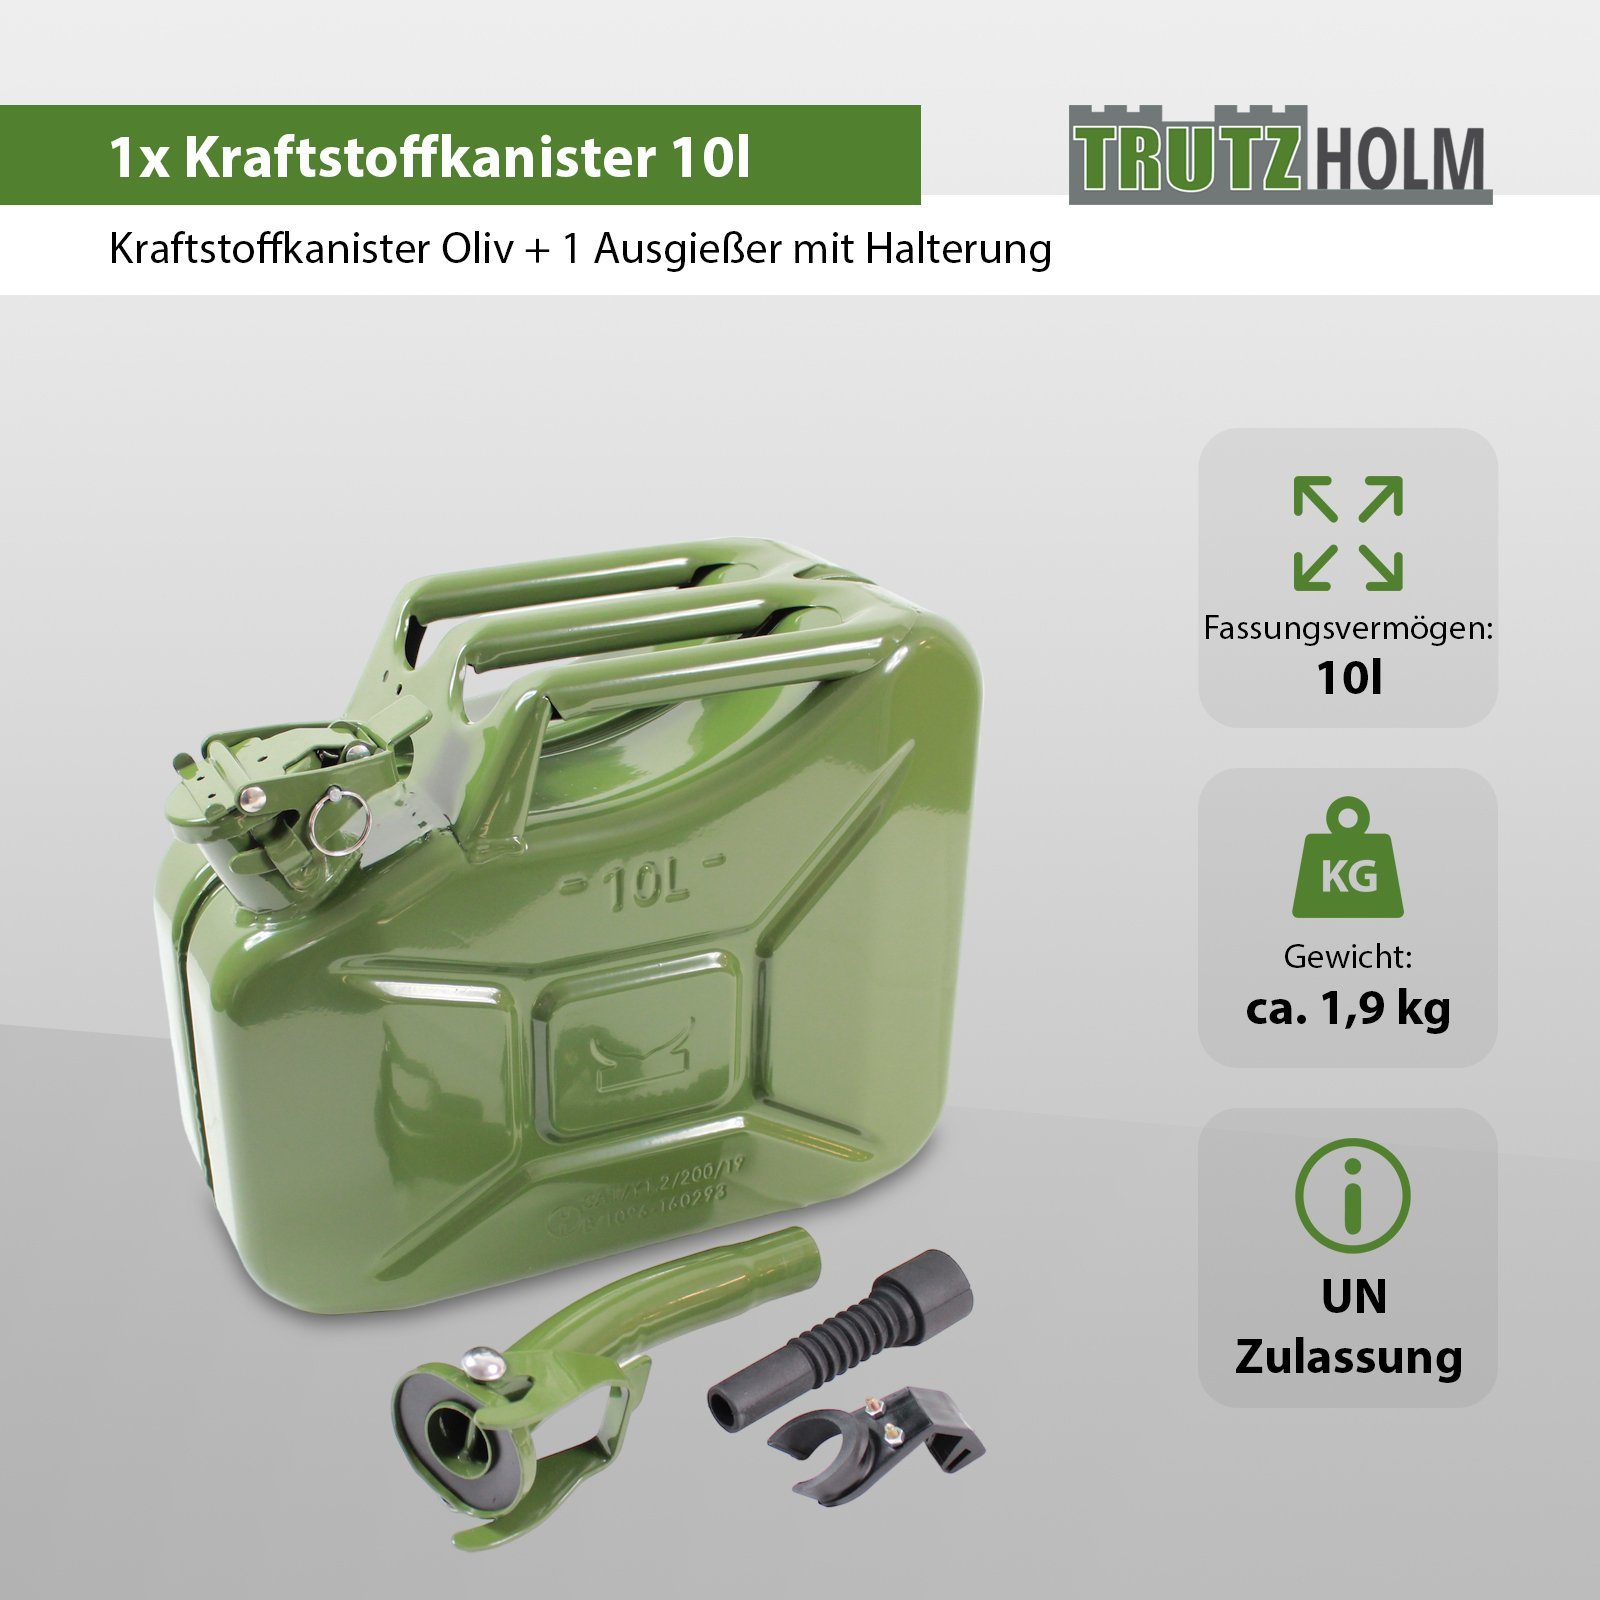 TRUTZHOLM Kanister 1x Benzinkanister Liter Ausgie inkl. Metall Kraftstoffkanister 10 Oliv